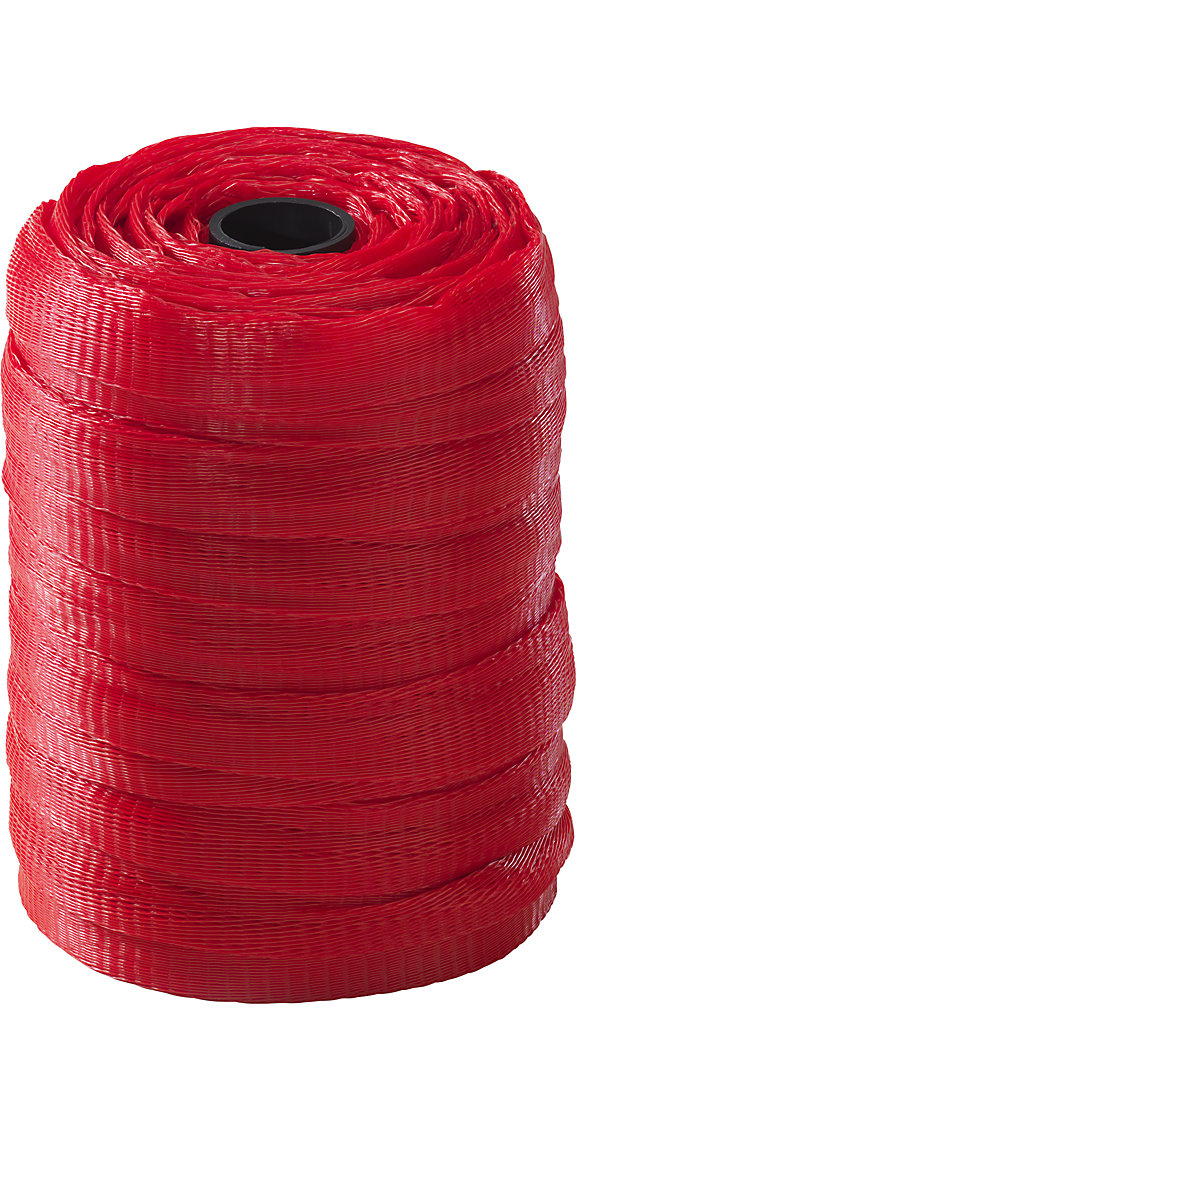 Materiaalbeschermingsnet, polyethyleen, 1 rol, rood, voor Ø 50 – 100 mm-12